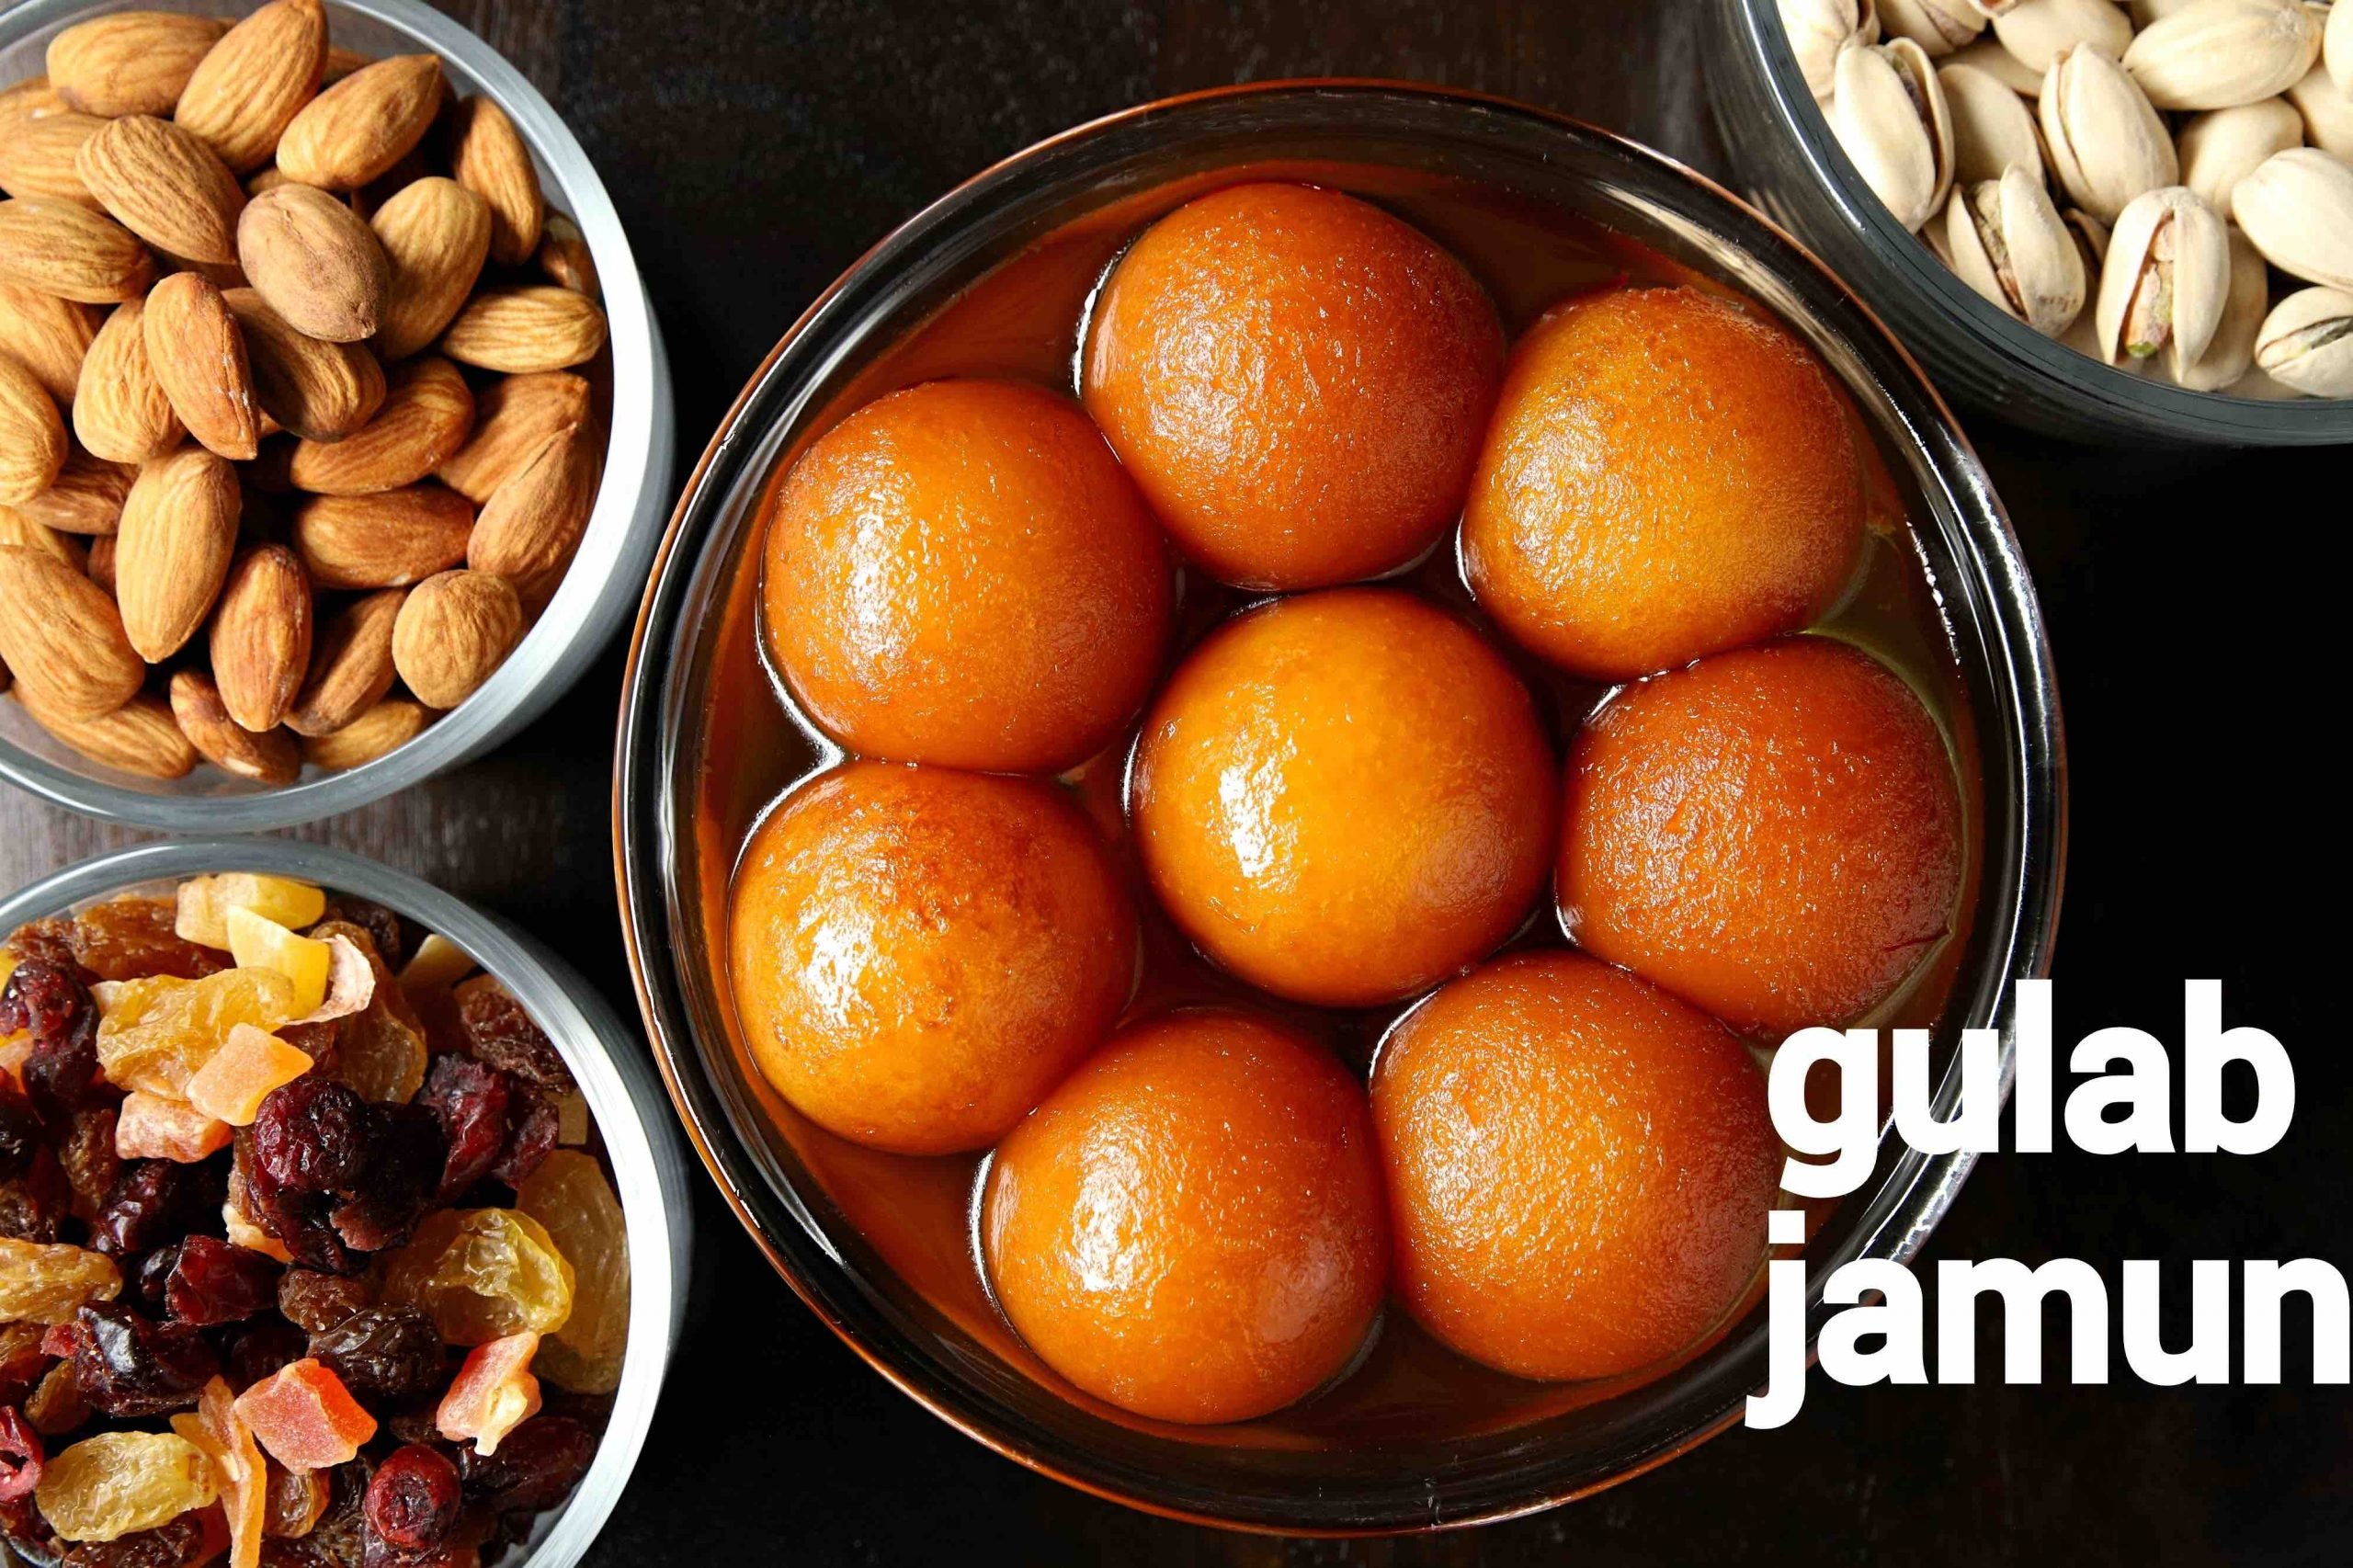 gulab jamun recipe  how to make gulab jamun with milk powder